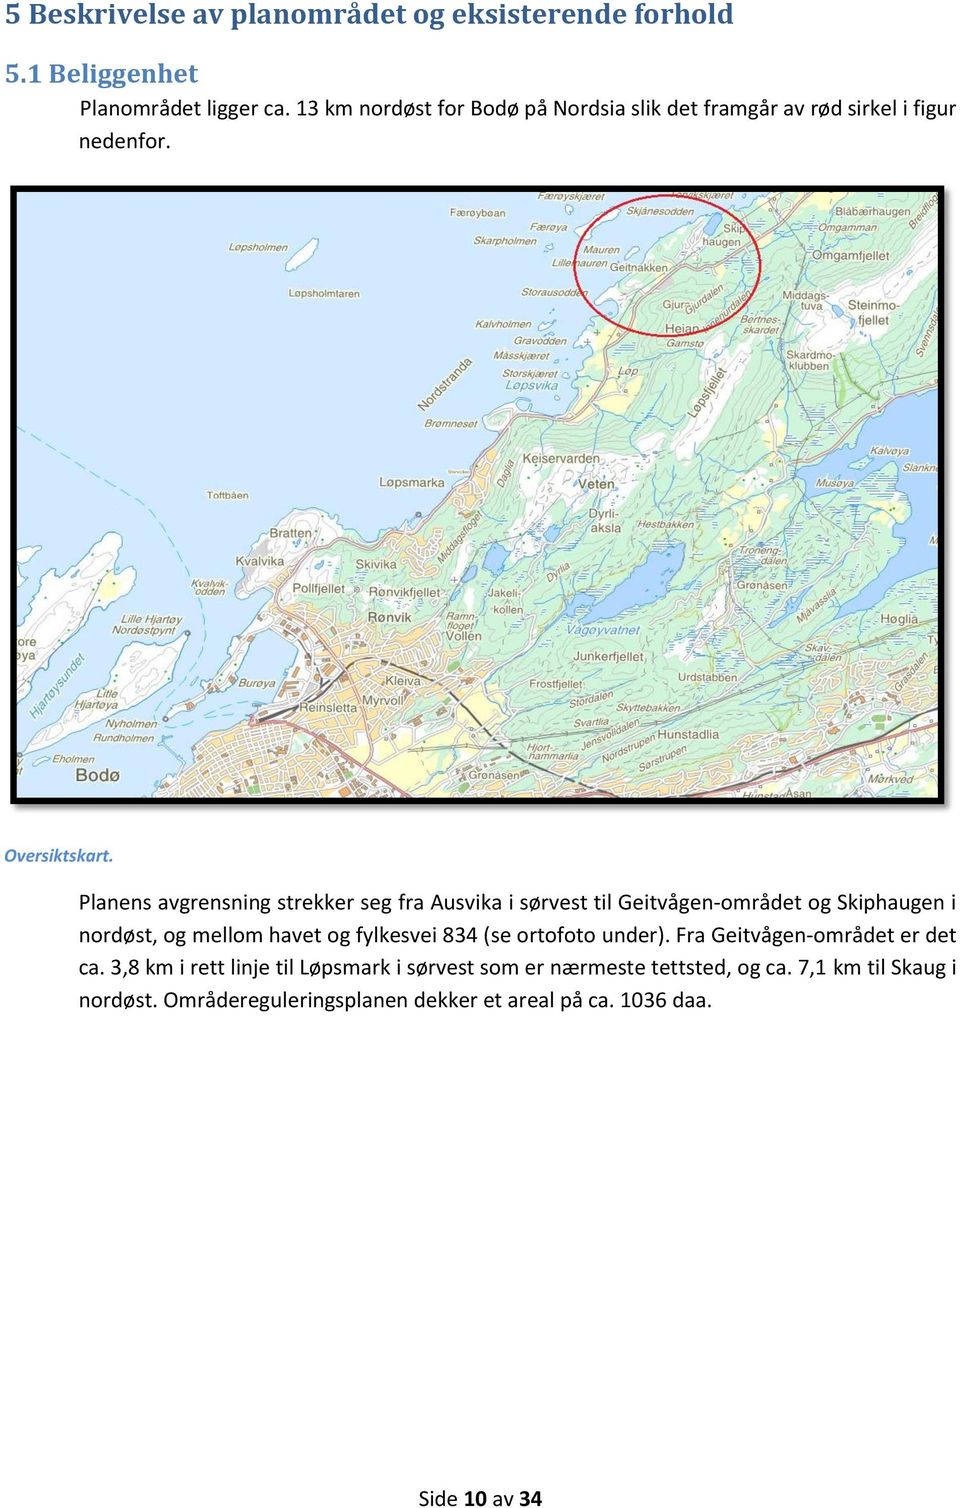 Planens avgrensning strekker seg fra Ausvika i sørvest til Geitvågen-området og Skiphaugen i nordøst, og mellom havet og fylkesvei 834 (se